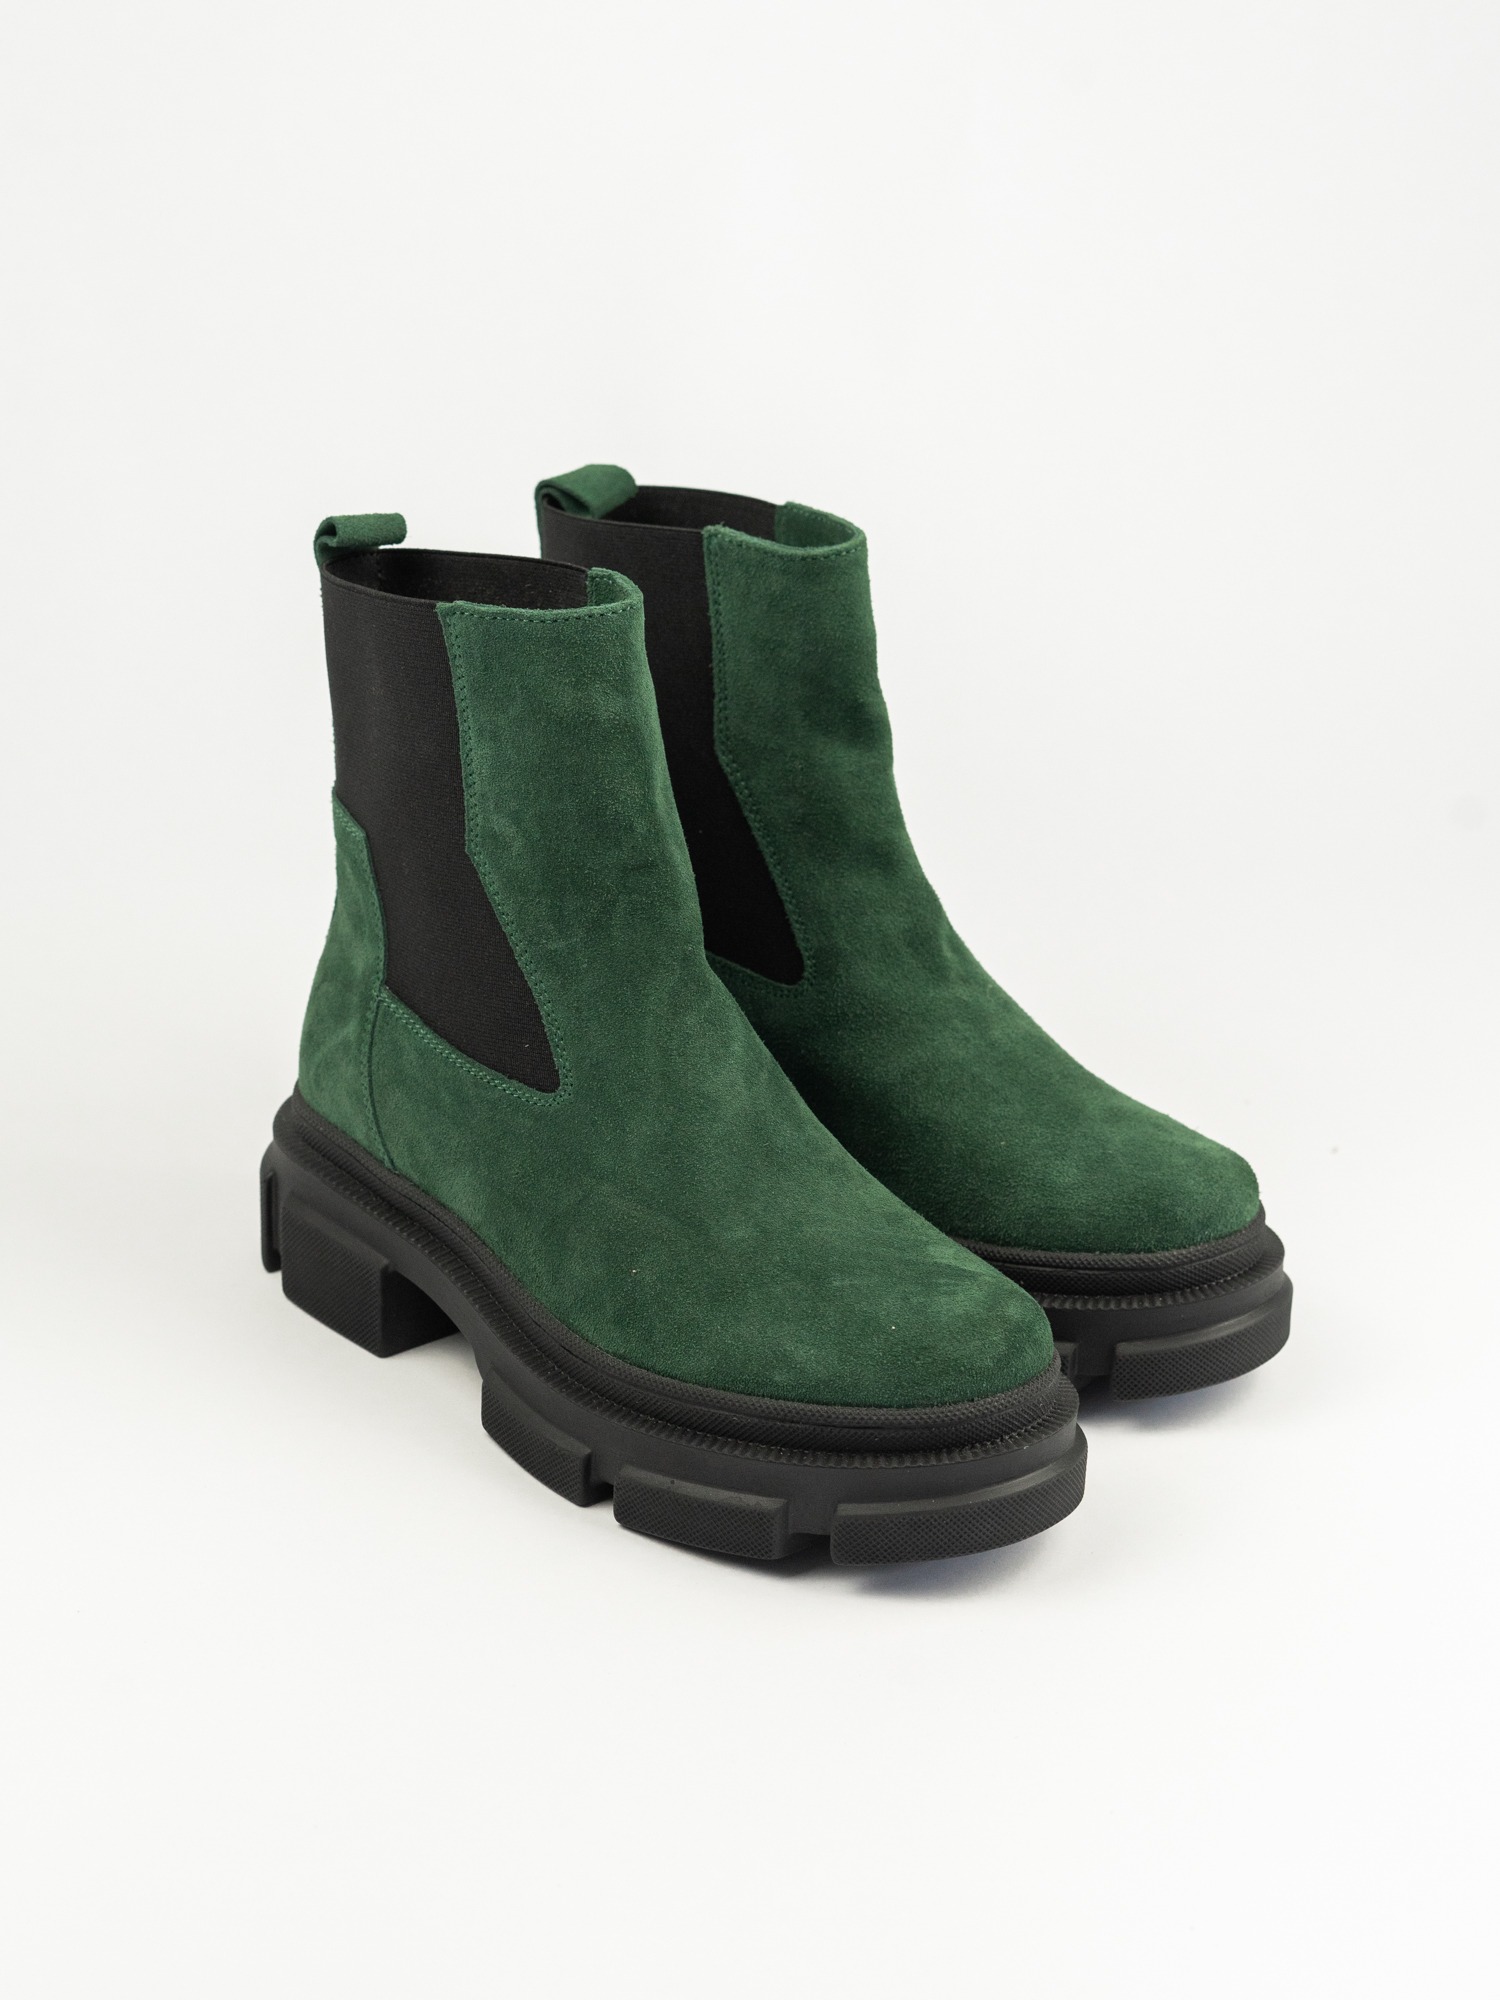 Женские ботинки  83-089-03В зеленый велюр ворсин 2